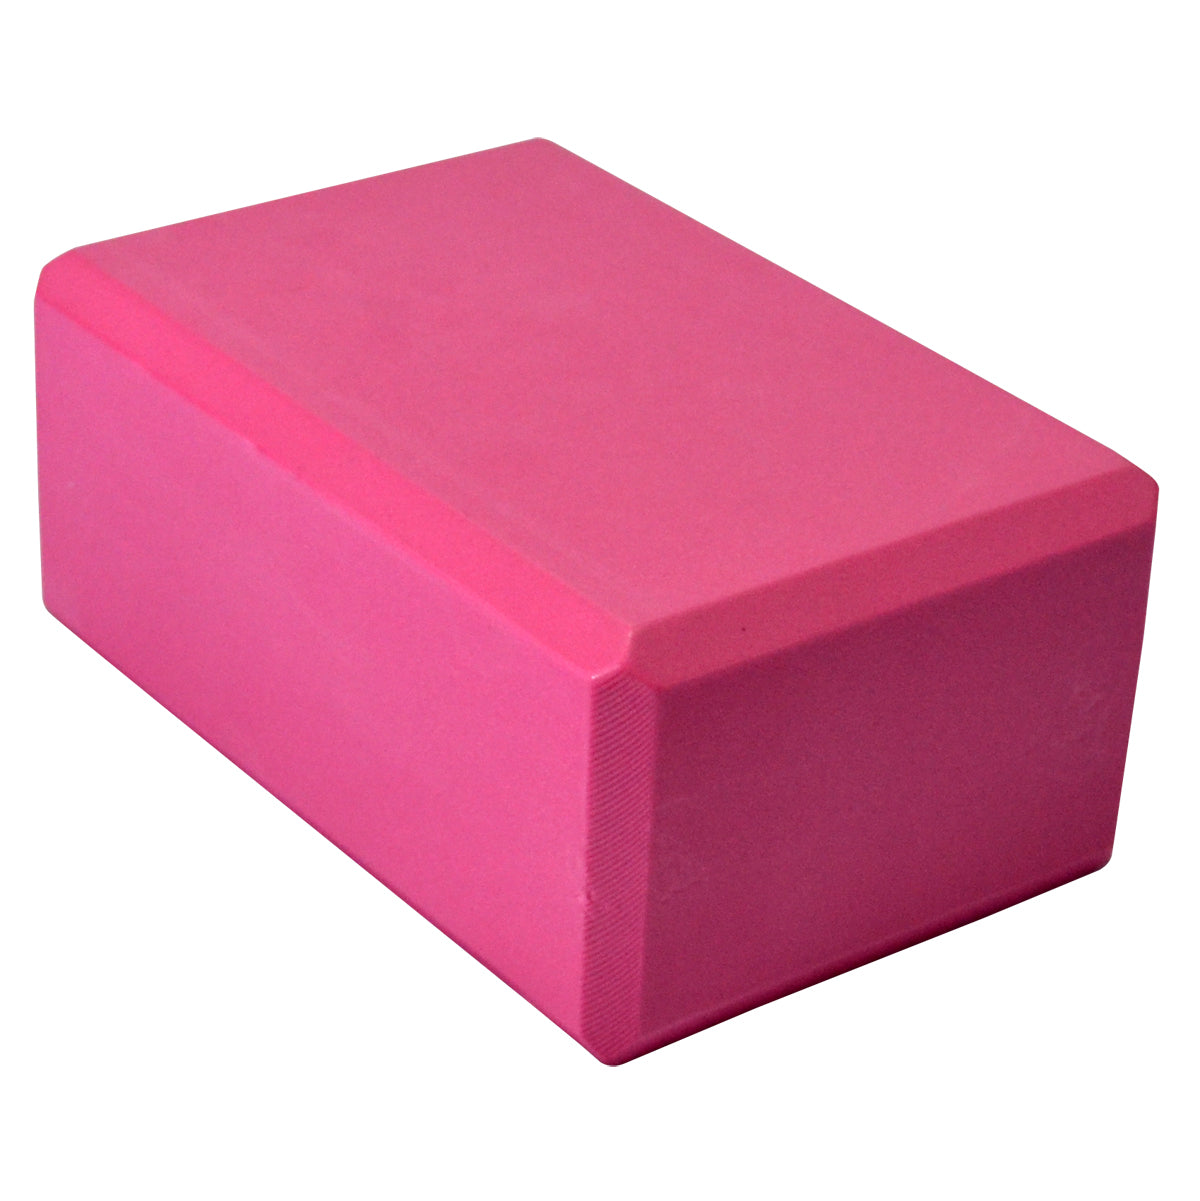 Gaiam Printed Fashion Yoga Block, Made from Sturdy Foam, Pink